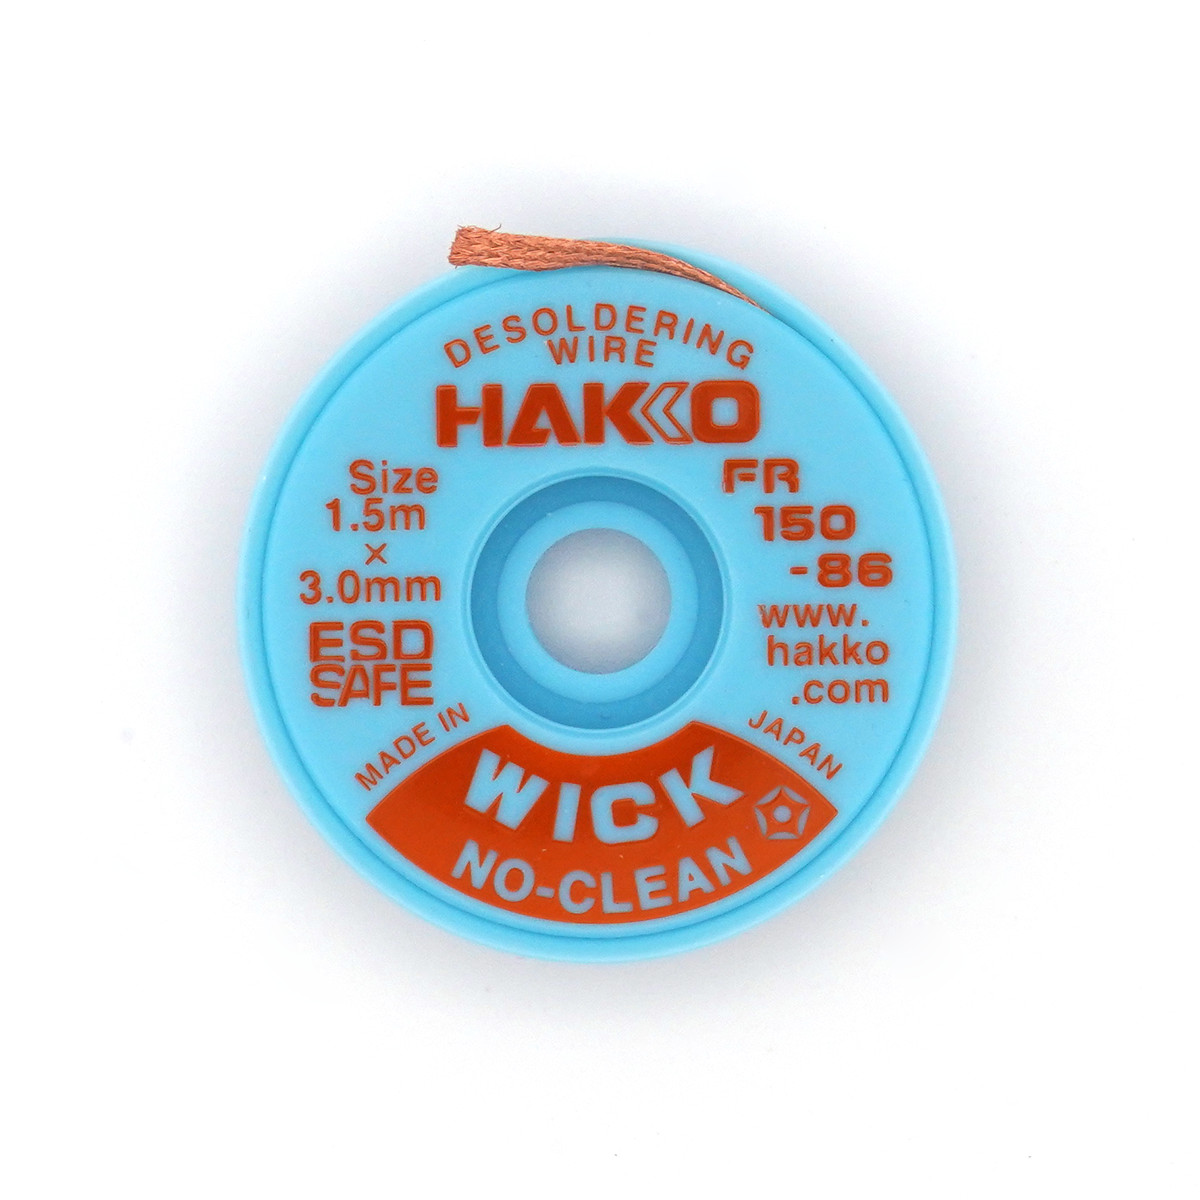 白光】 ノークリーンタイプウイック (はんだ吸取線) 【FR150】 / 【HAKKO】No-Clean Type Wick (Desoldering  Wire) 【FR150】 / アーケードゲーム販売トップス